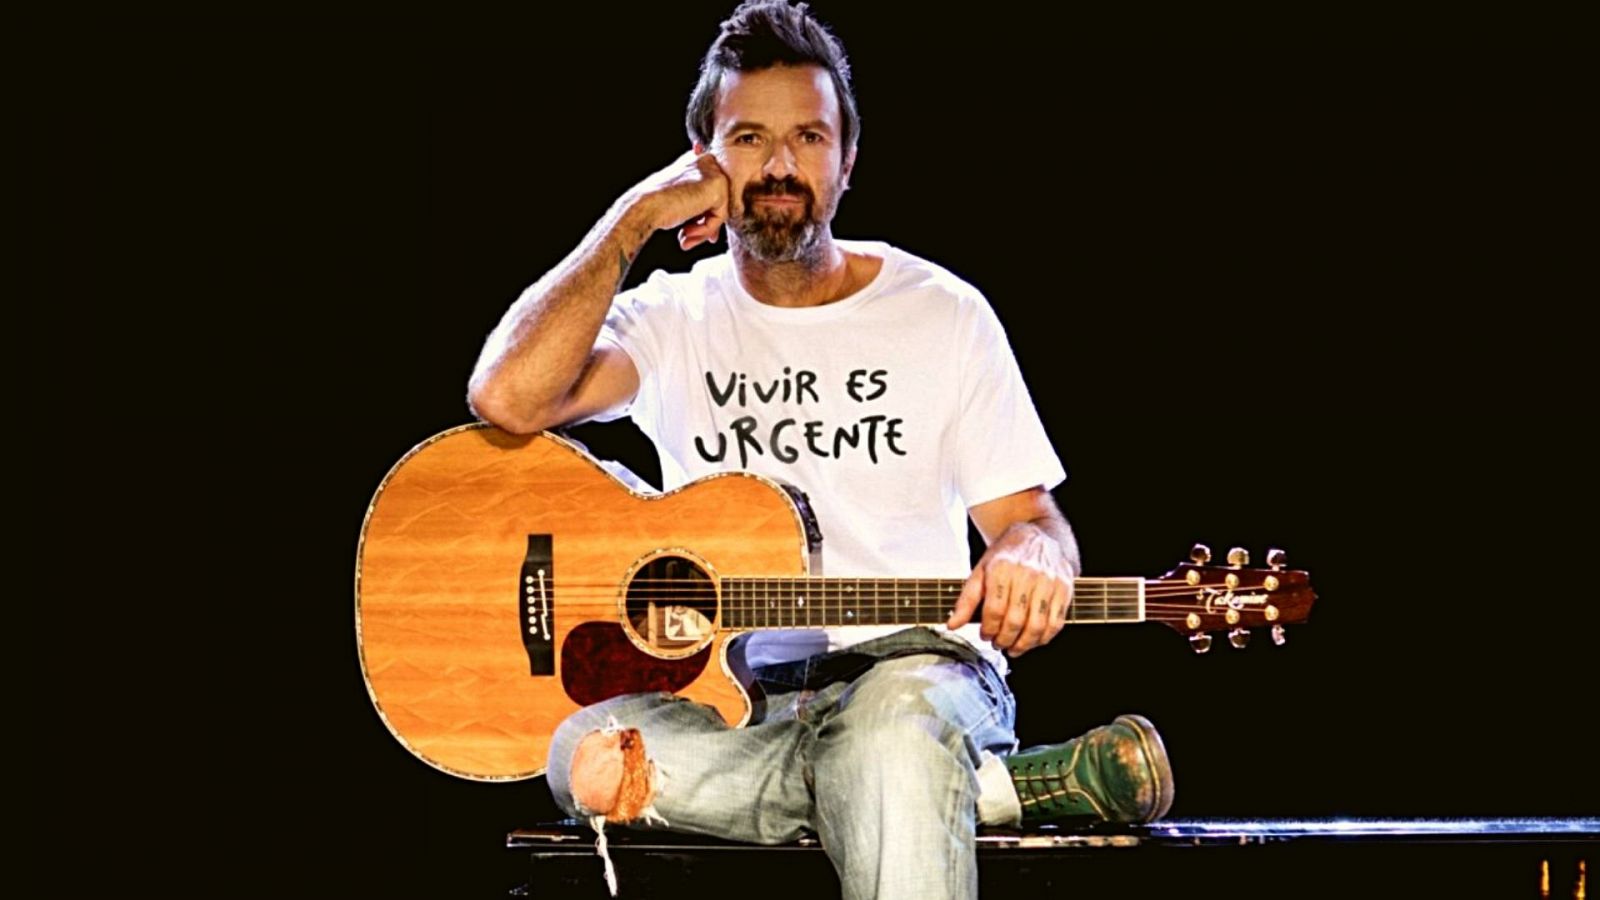 Pau Donés con una camiseta blanca con el mensaje 'Vivir es urgente'. Está sentado sobre un piano de cola con una guitarra acústica entre las manos